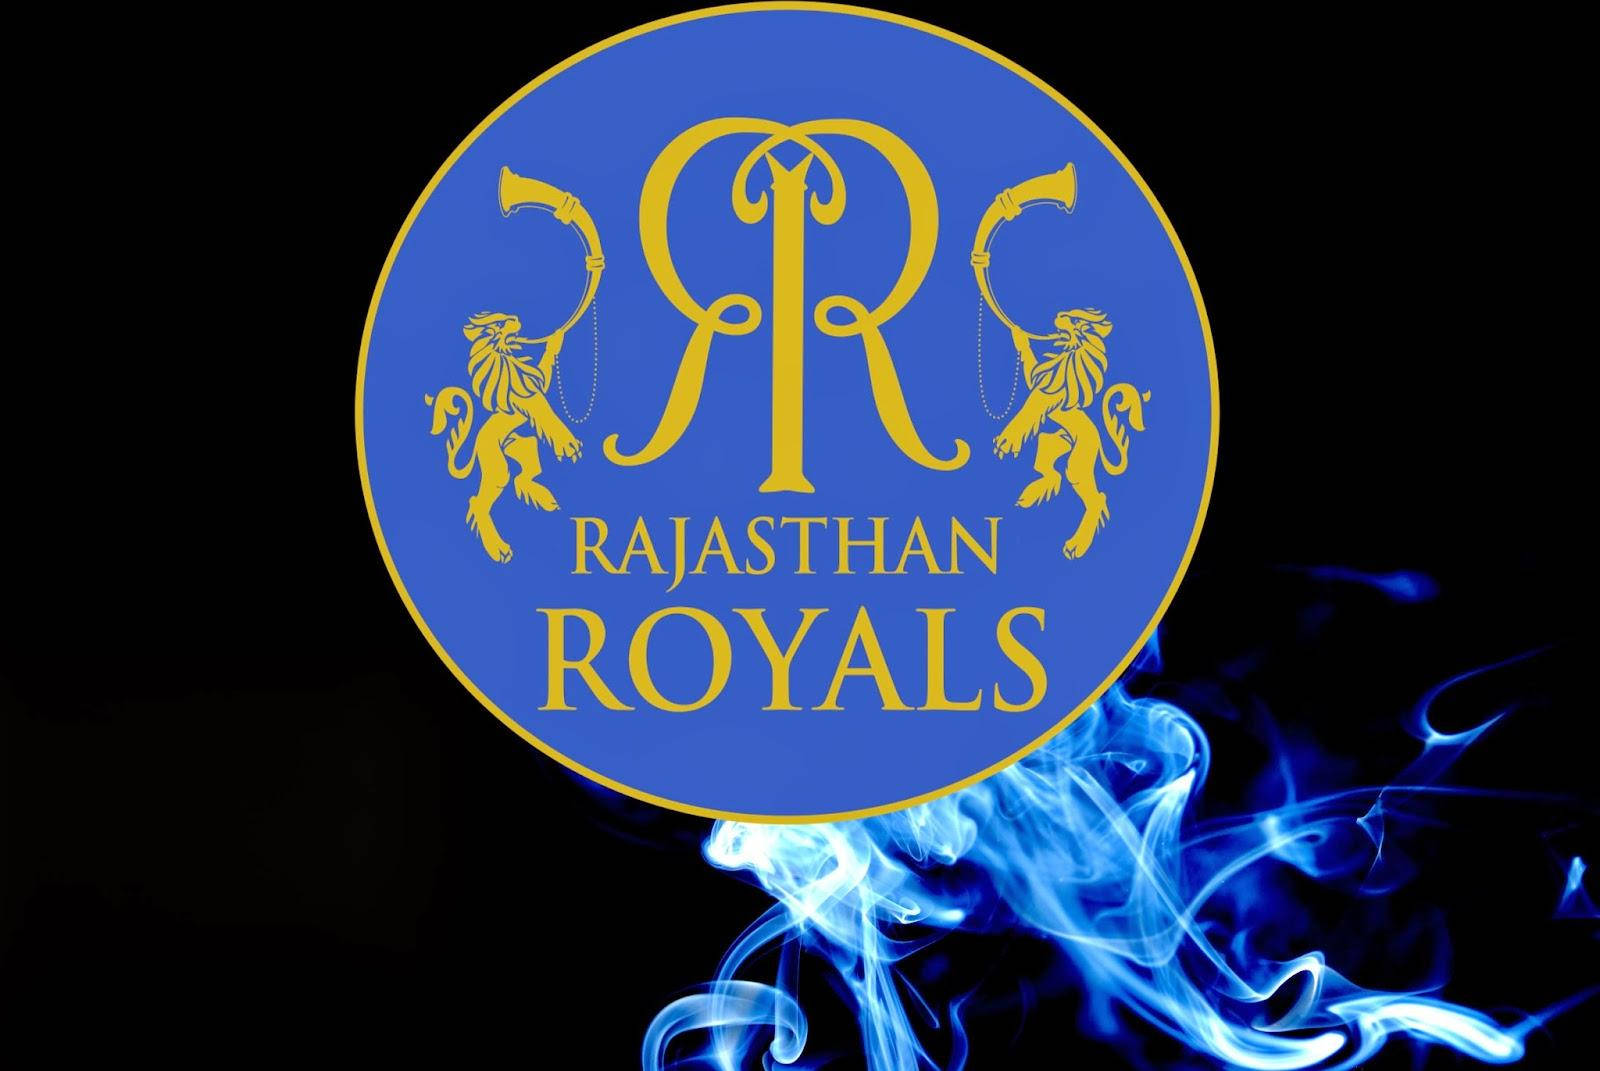 Logotipodel Equipo De Cricket De La India Royals De Rajasthan Humo Fondo de pantalla